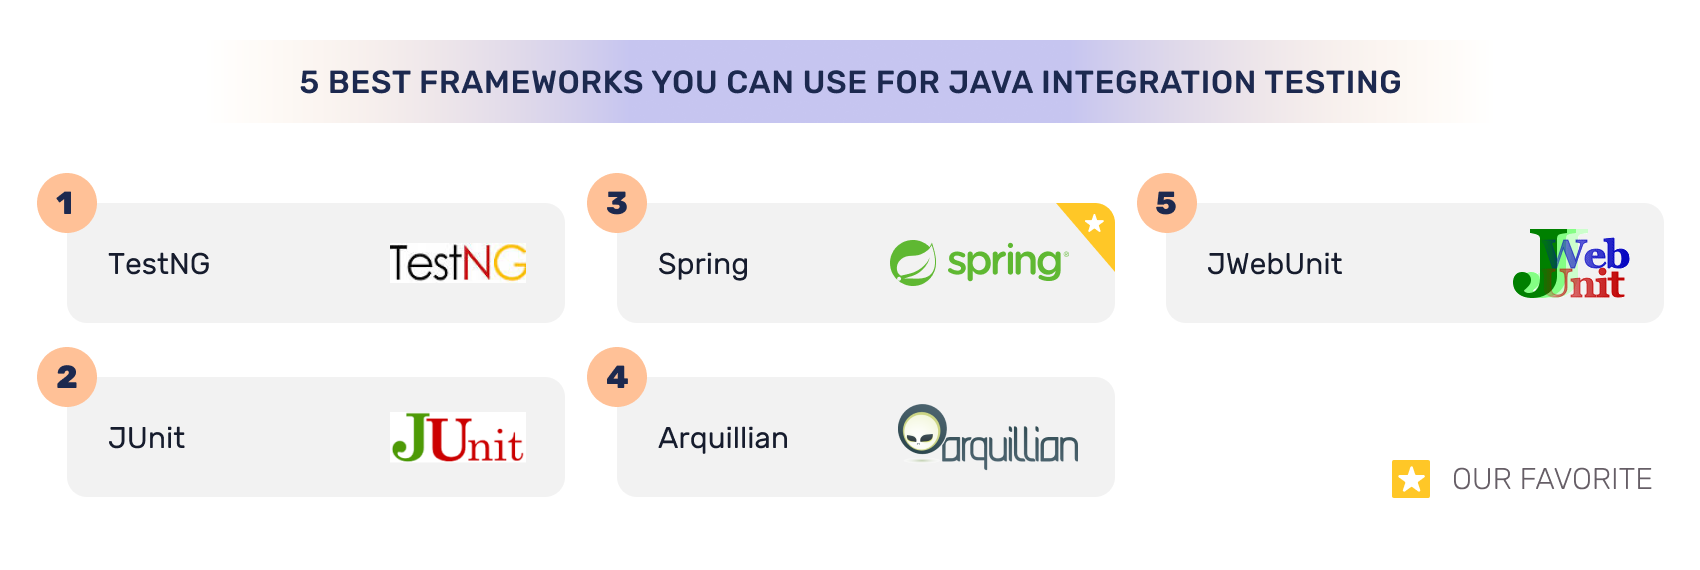 Frameworks for Java Integration Testing